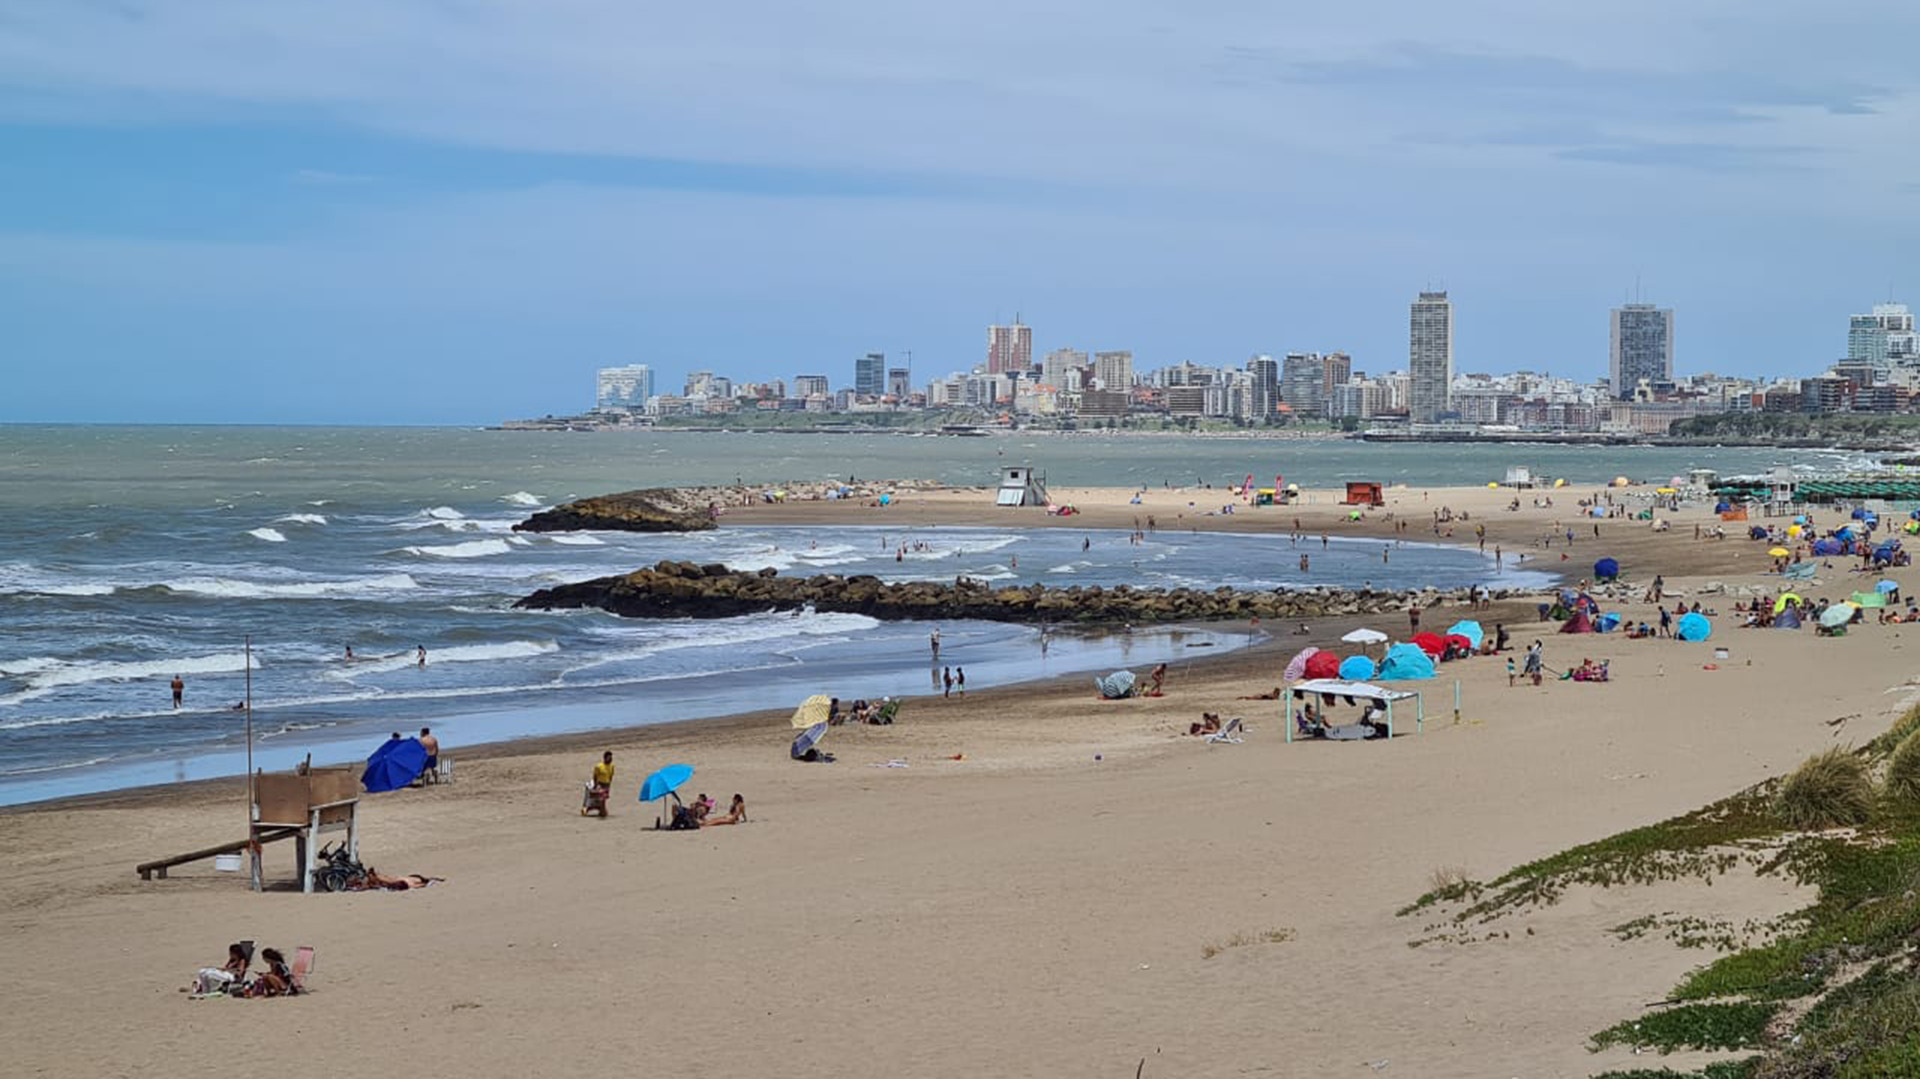 Las playas son la última porción de arena marplatense antes de que la costa se convierta en la Ruta Provincial 11